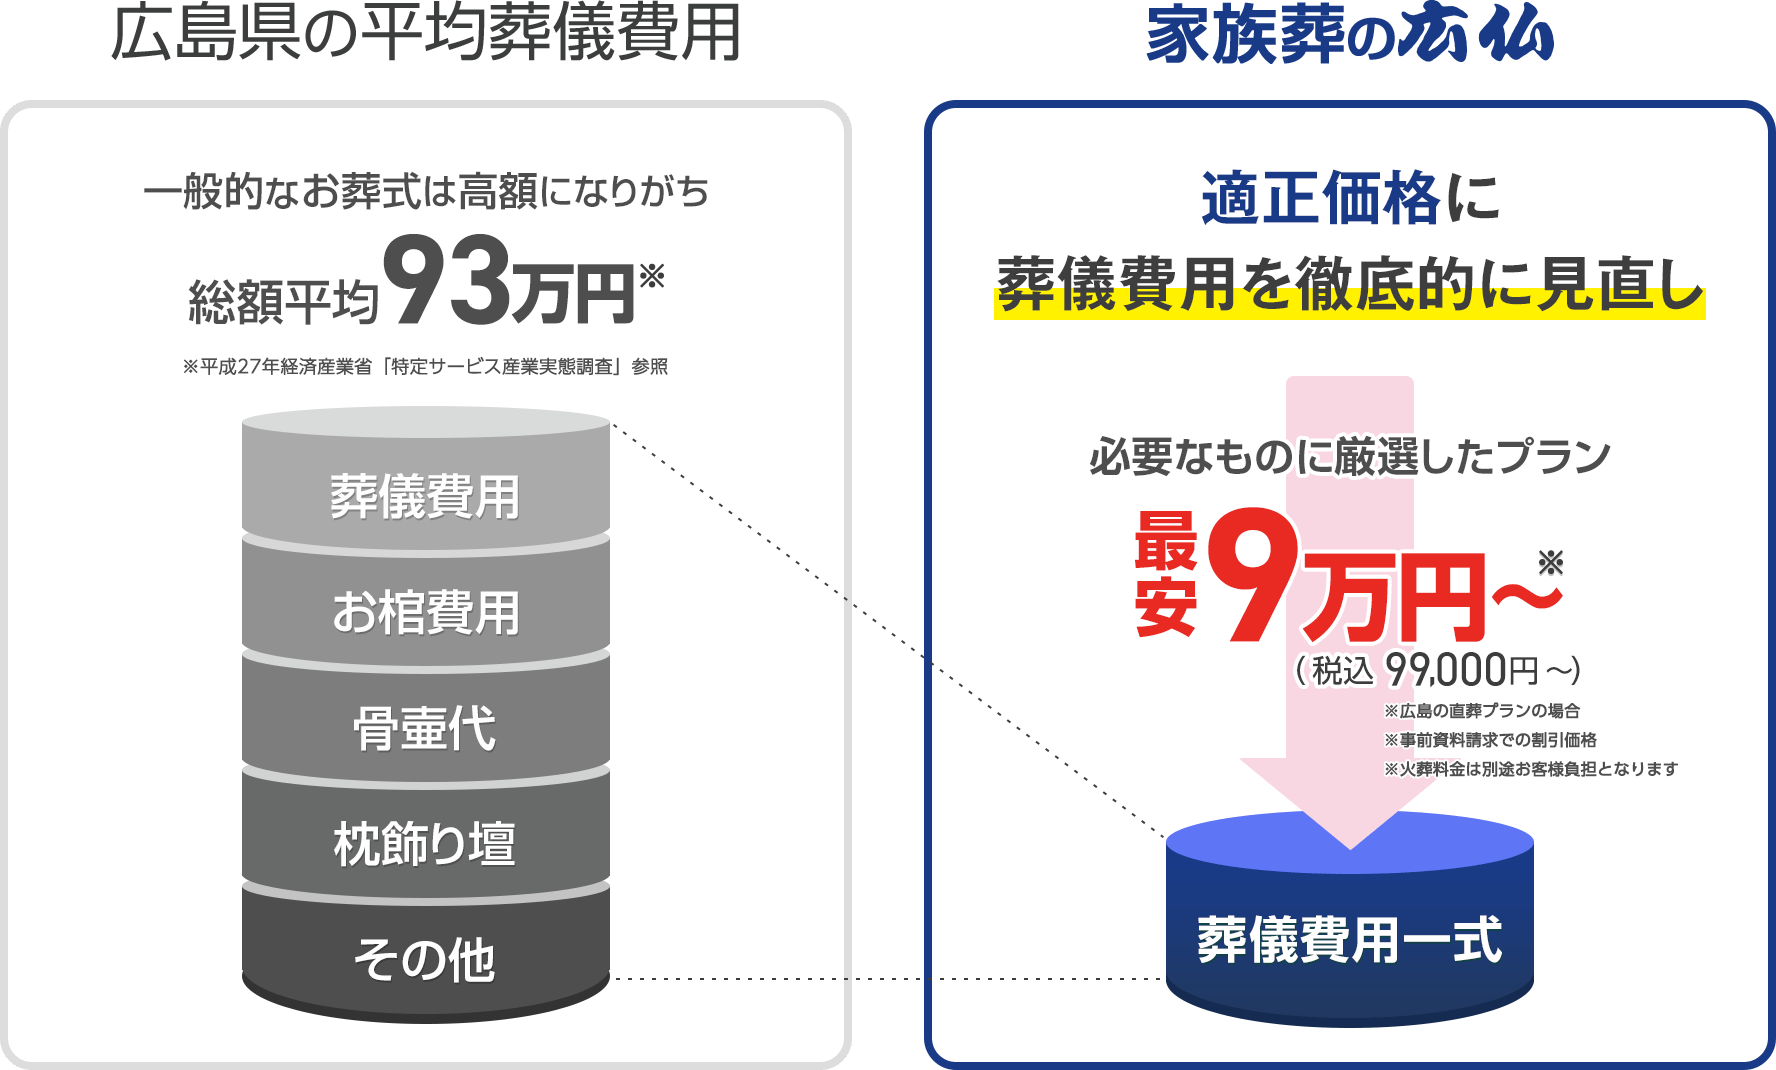 広島市東区で葬儀・葬式が税込9.9万円できる家族葬の広仏 広島県の平均葬儀費用との比較